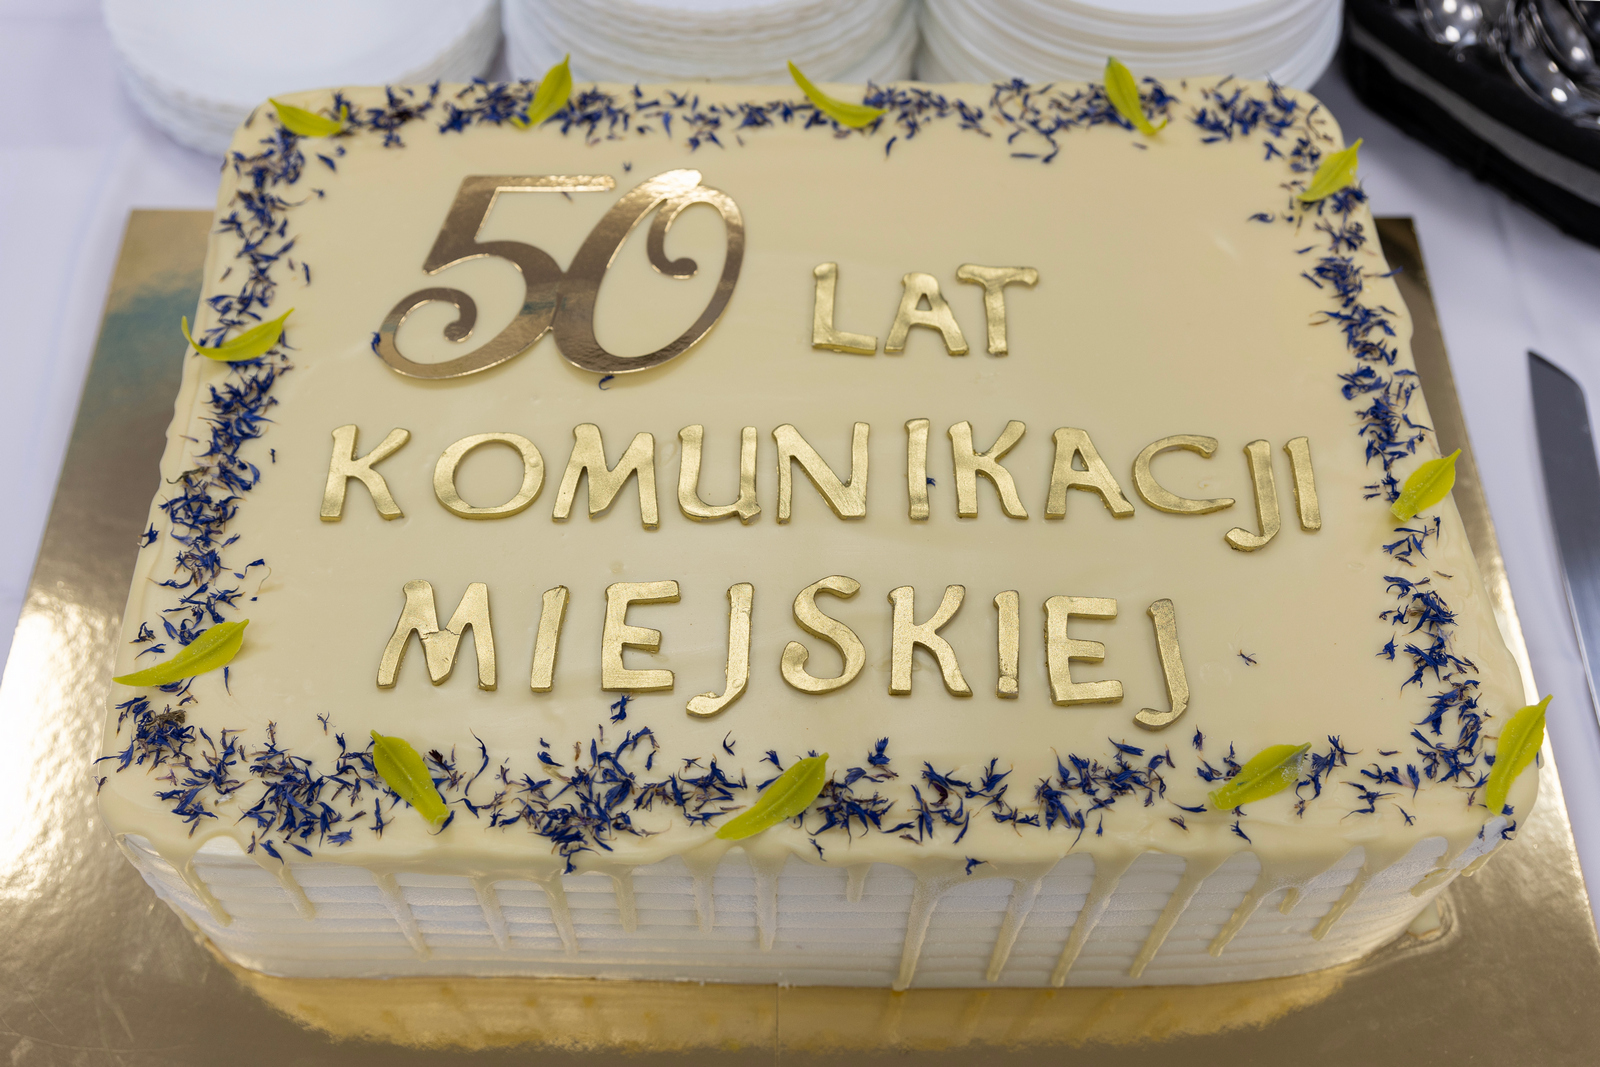 50 lat Ełckiej Komunikacji Miejskiej